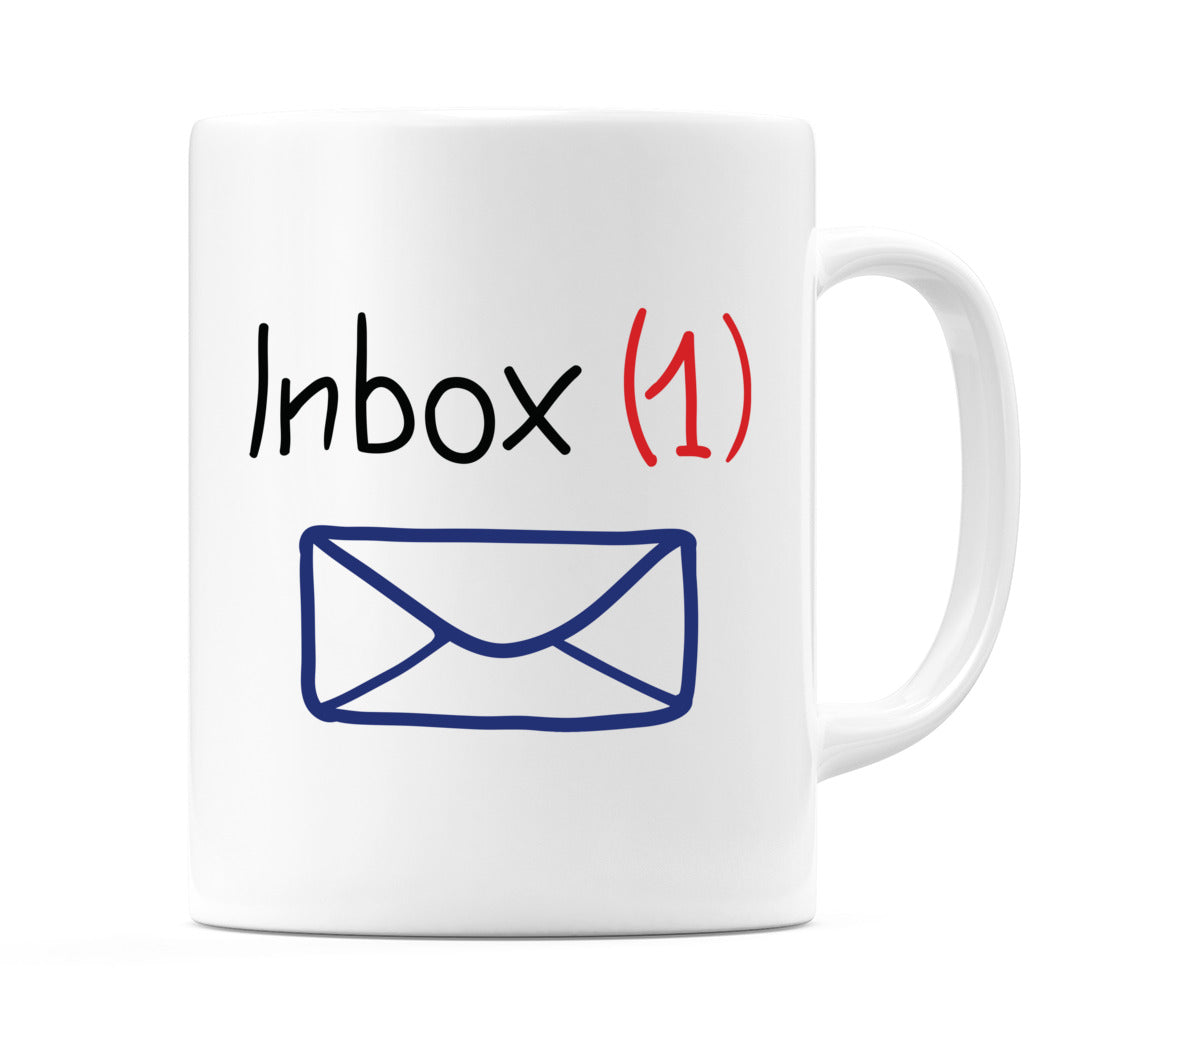 Inbox (1) Mug